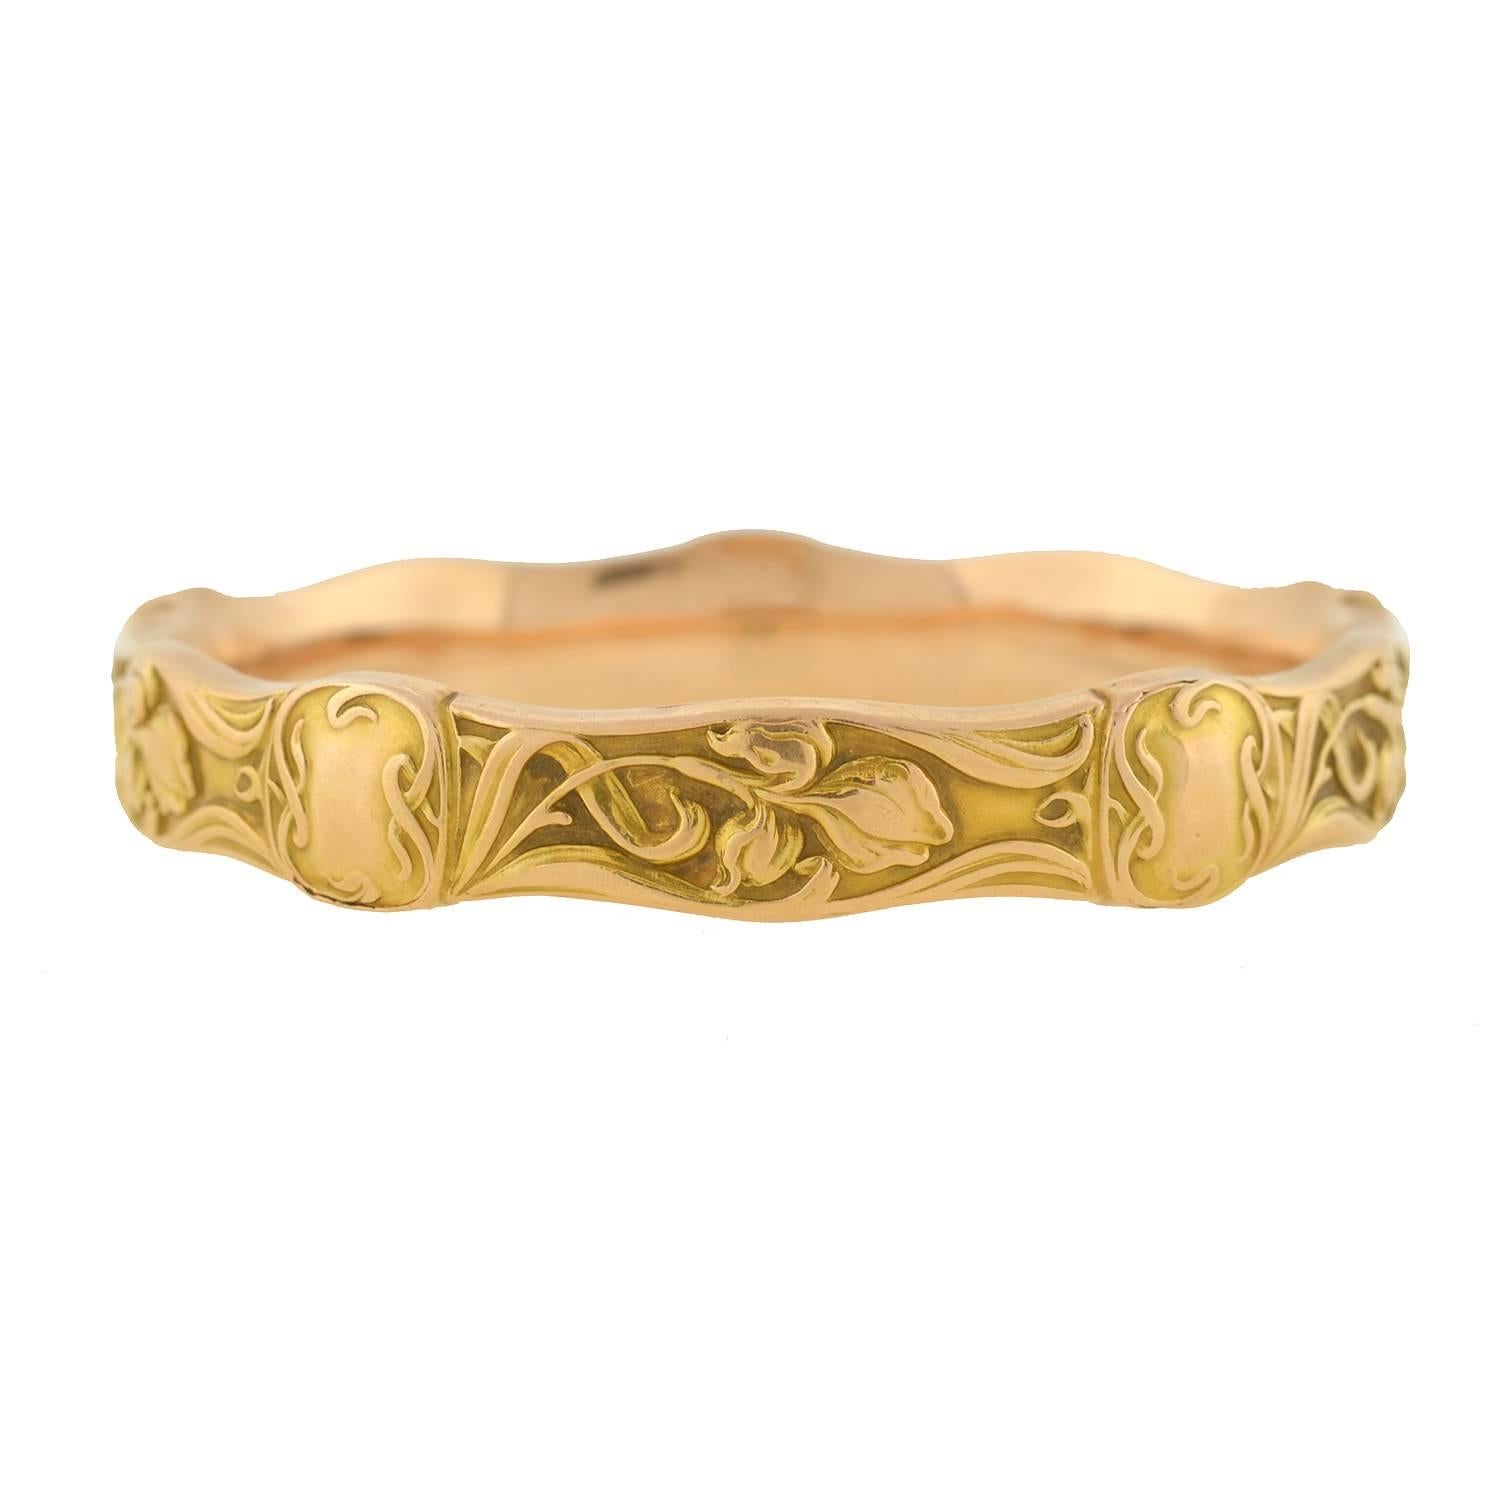 Riker Brothers Art Nouveau Iris Motif Gold Repousse Bangle Bracelet